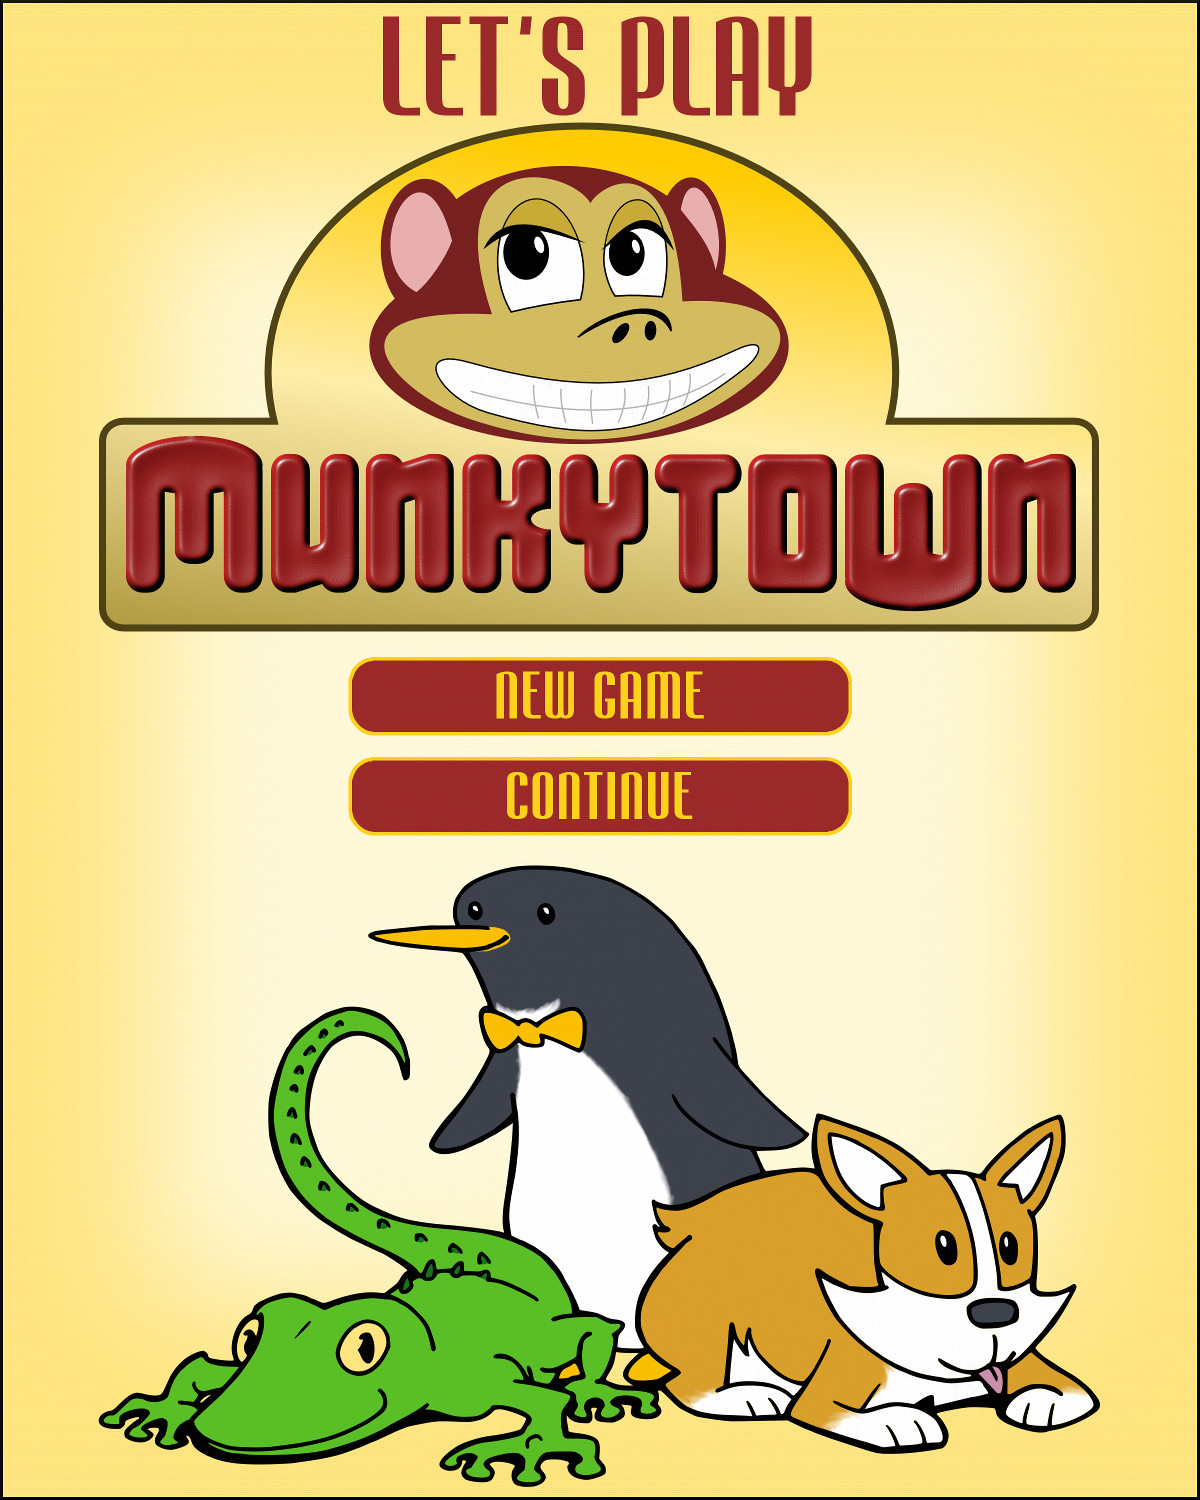 Let's play Munkytown!